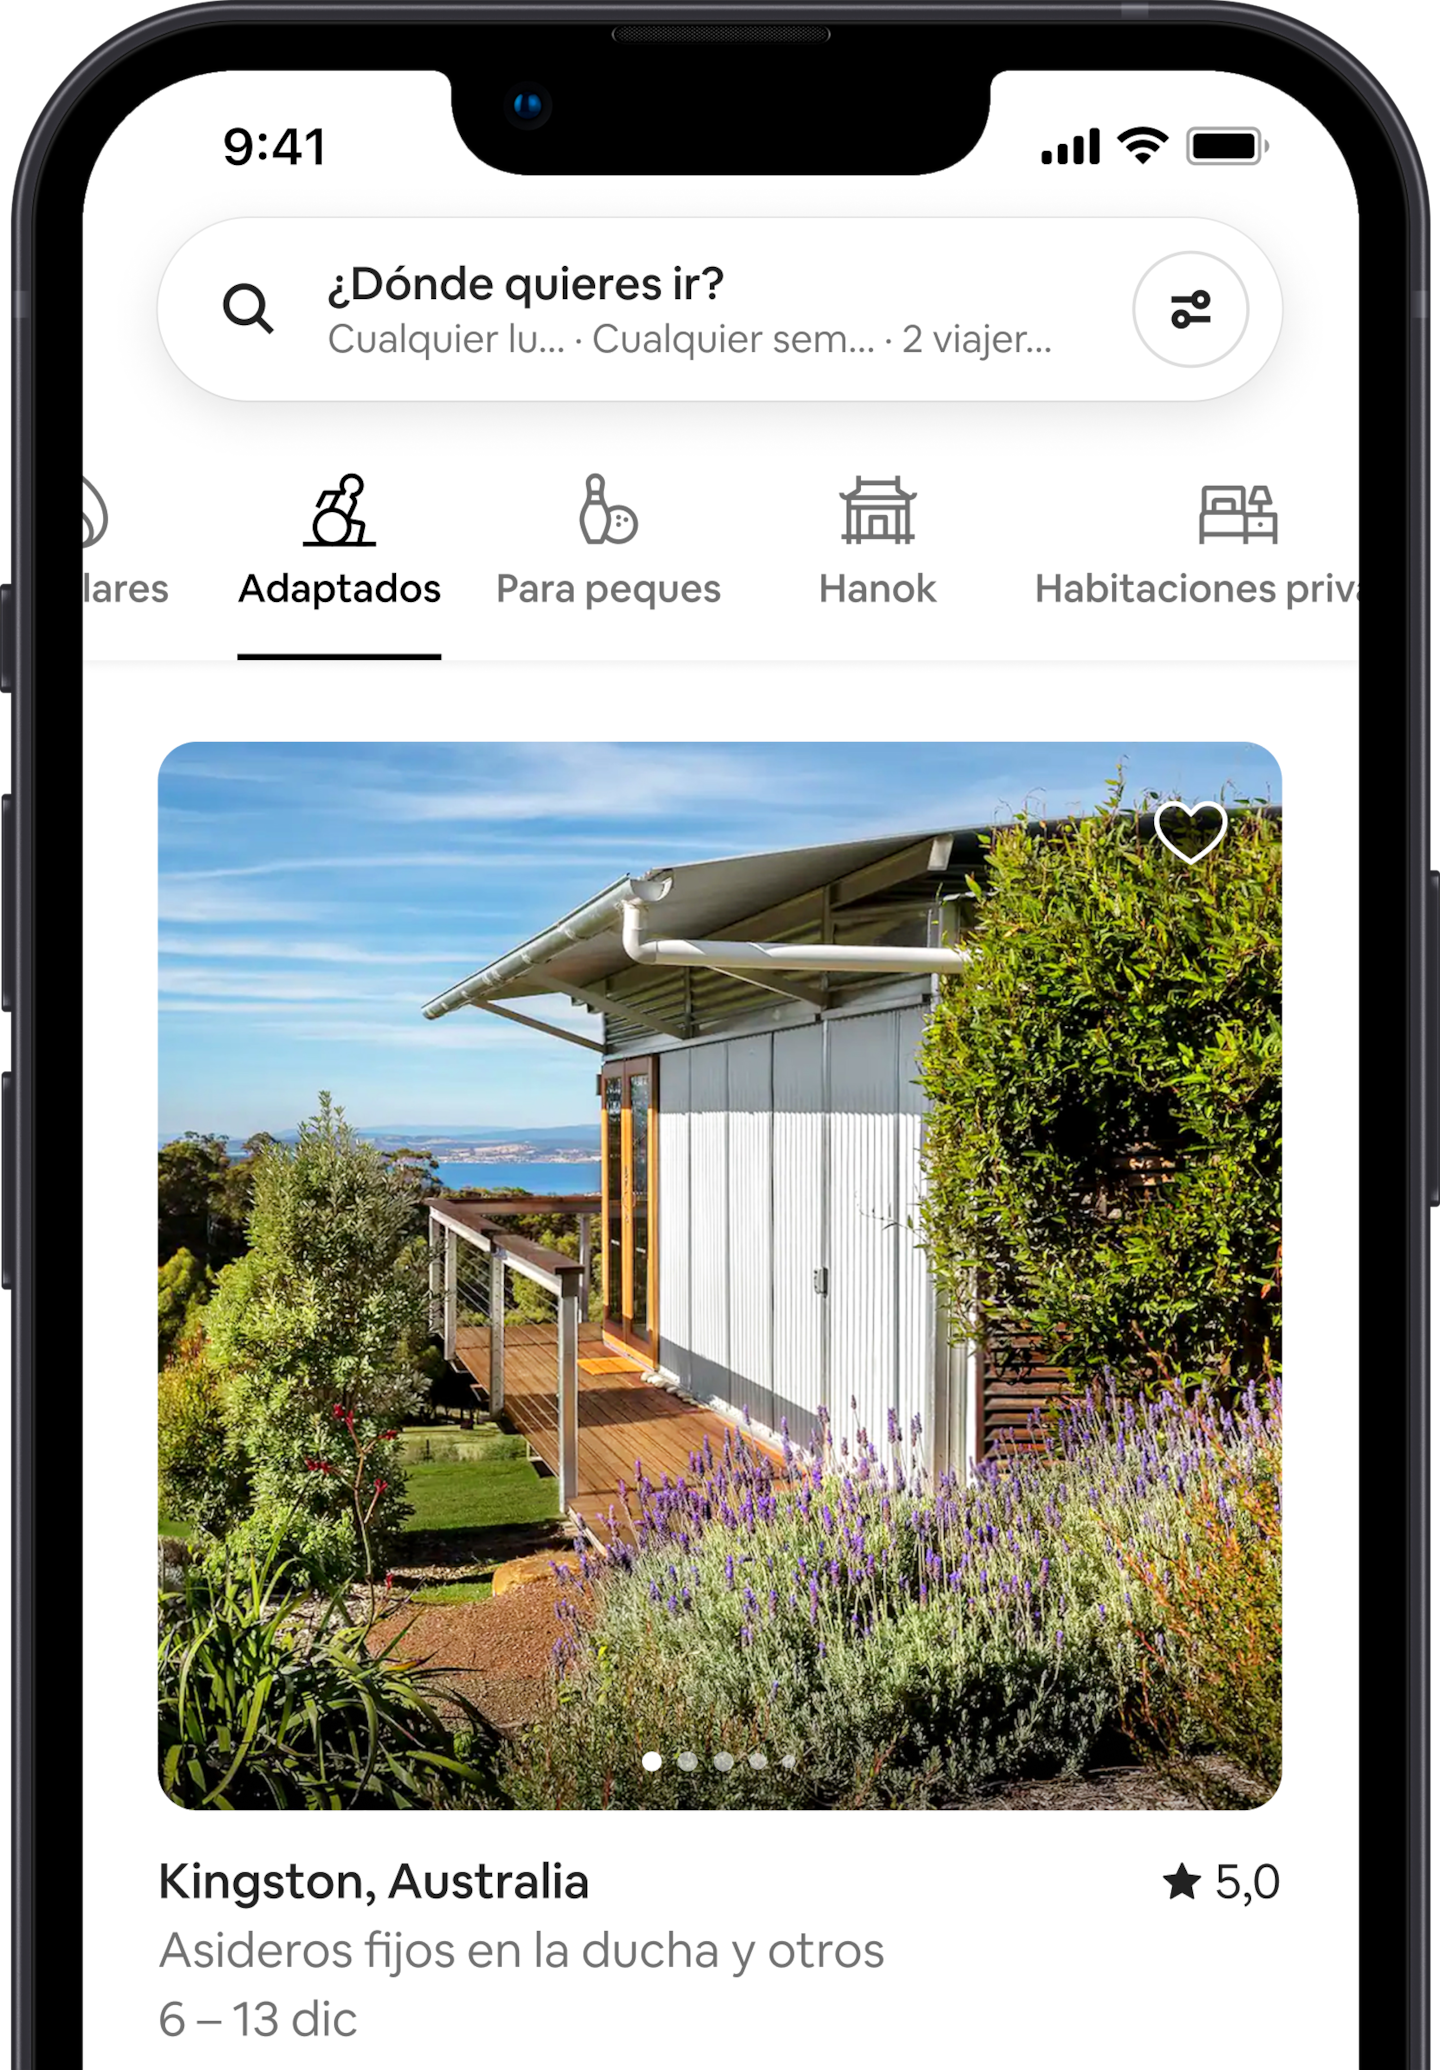 Un teléfono que muestra alojamientos en Airbnb de la categoría Adaptados, donde aparece destacada una casa que tiene una entrada sin escalones.